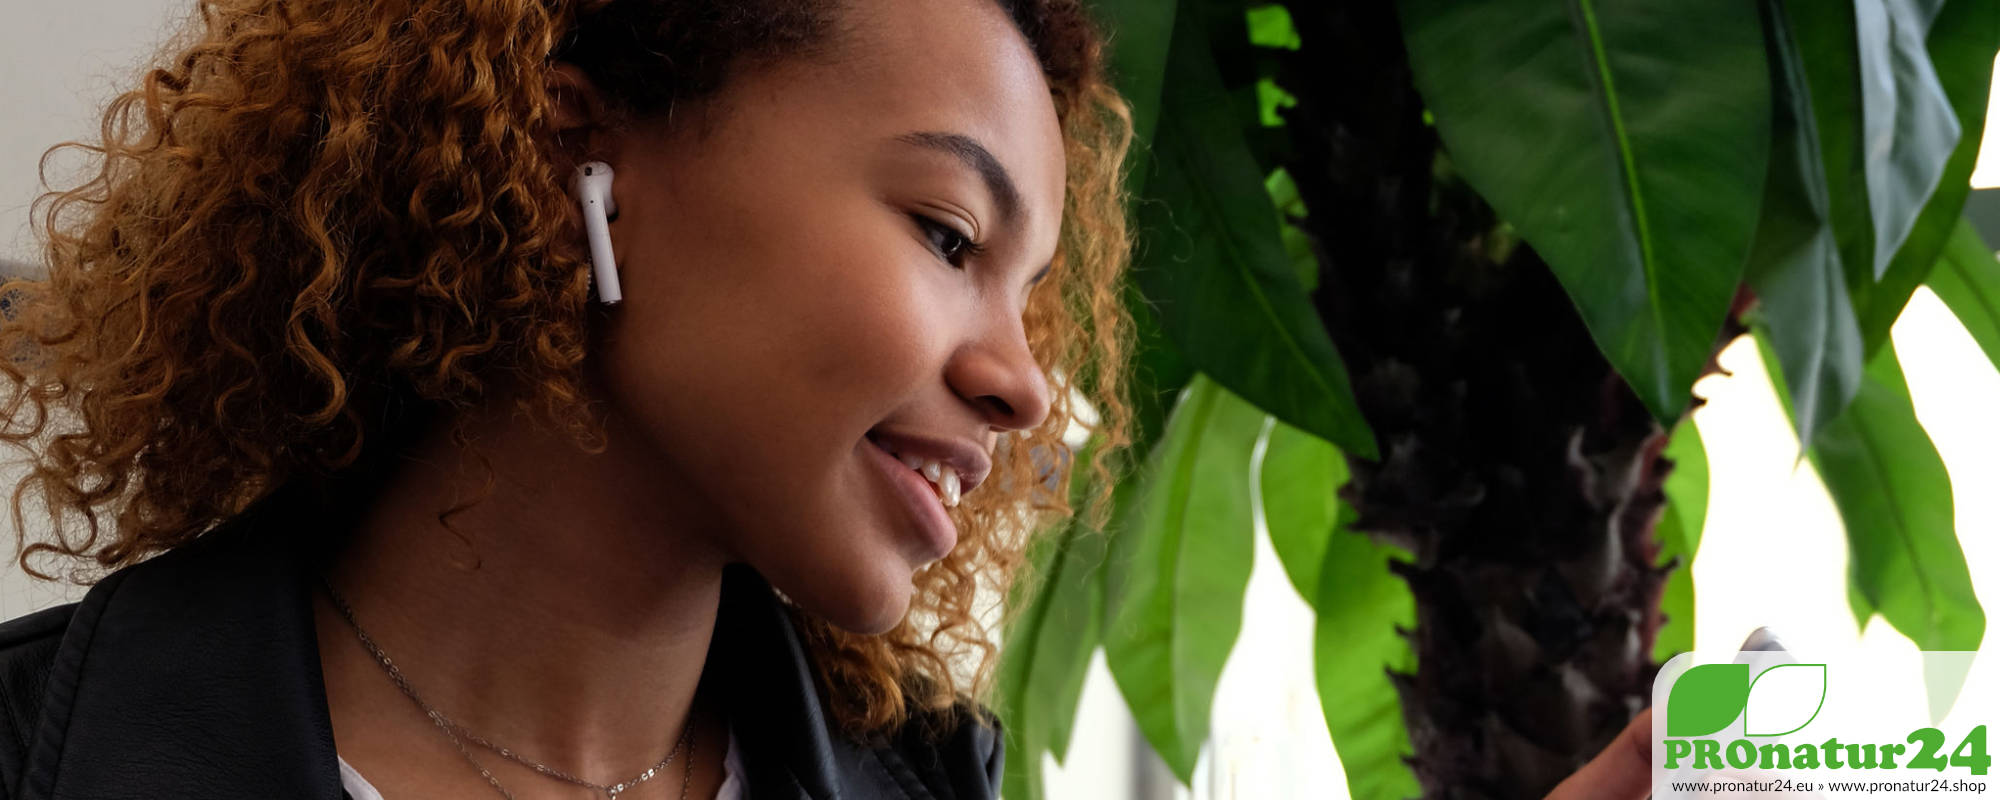 Apple Airpods im EMF Strahlungs Check.. Die Vorteile und Nachteile der stylischen Bluetooth Kopfhörer im Test.